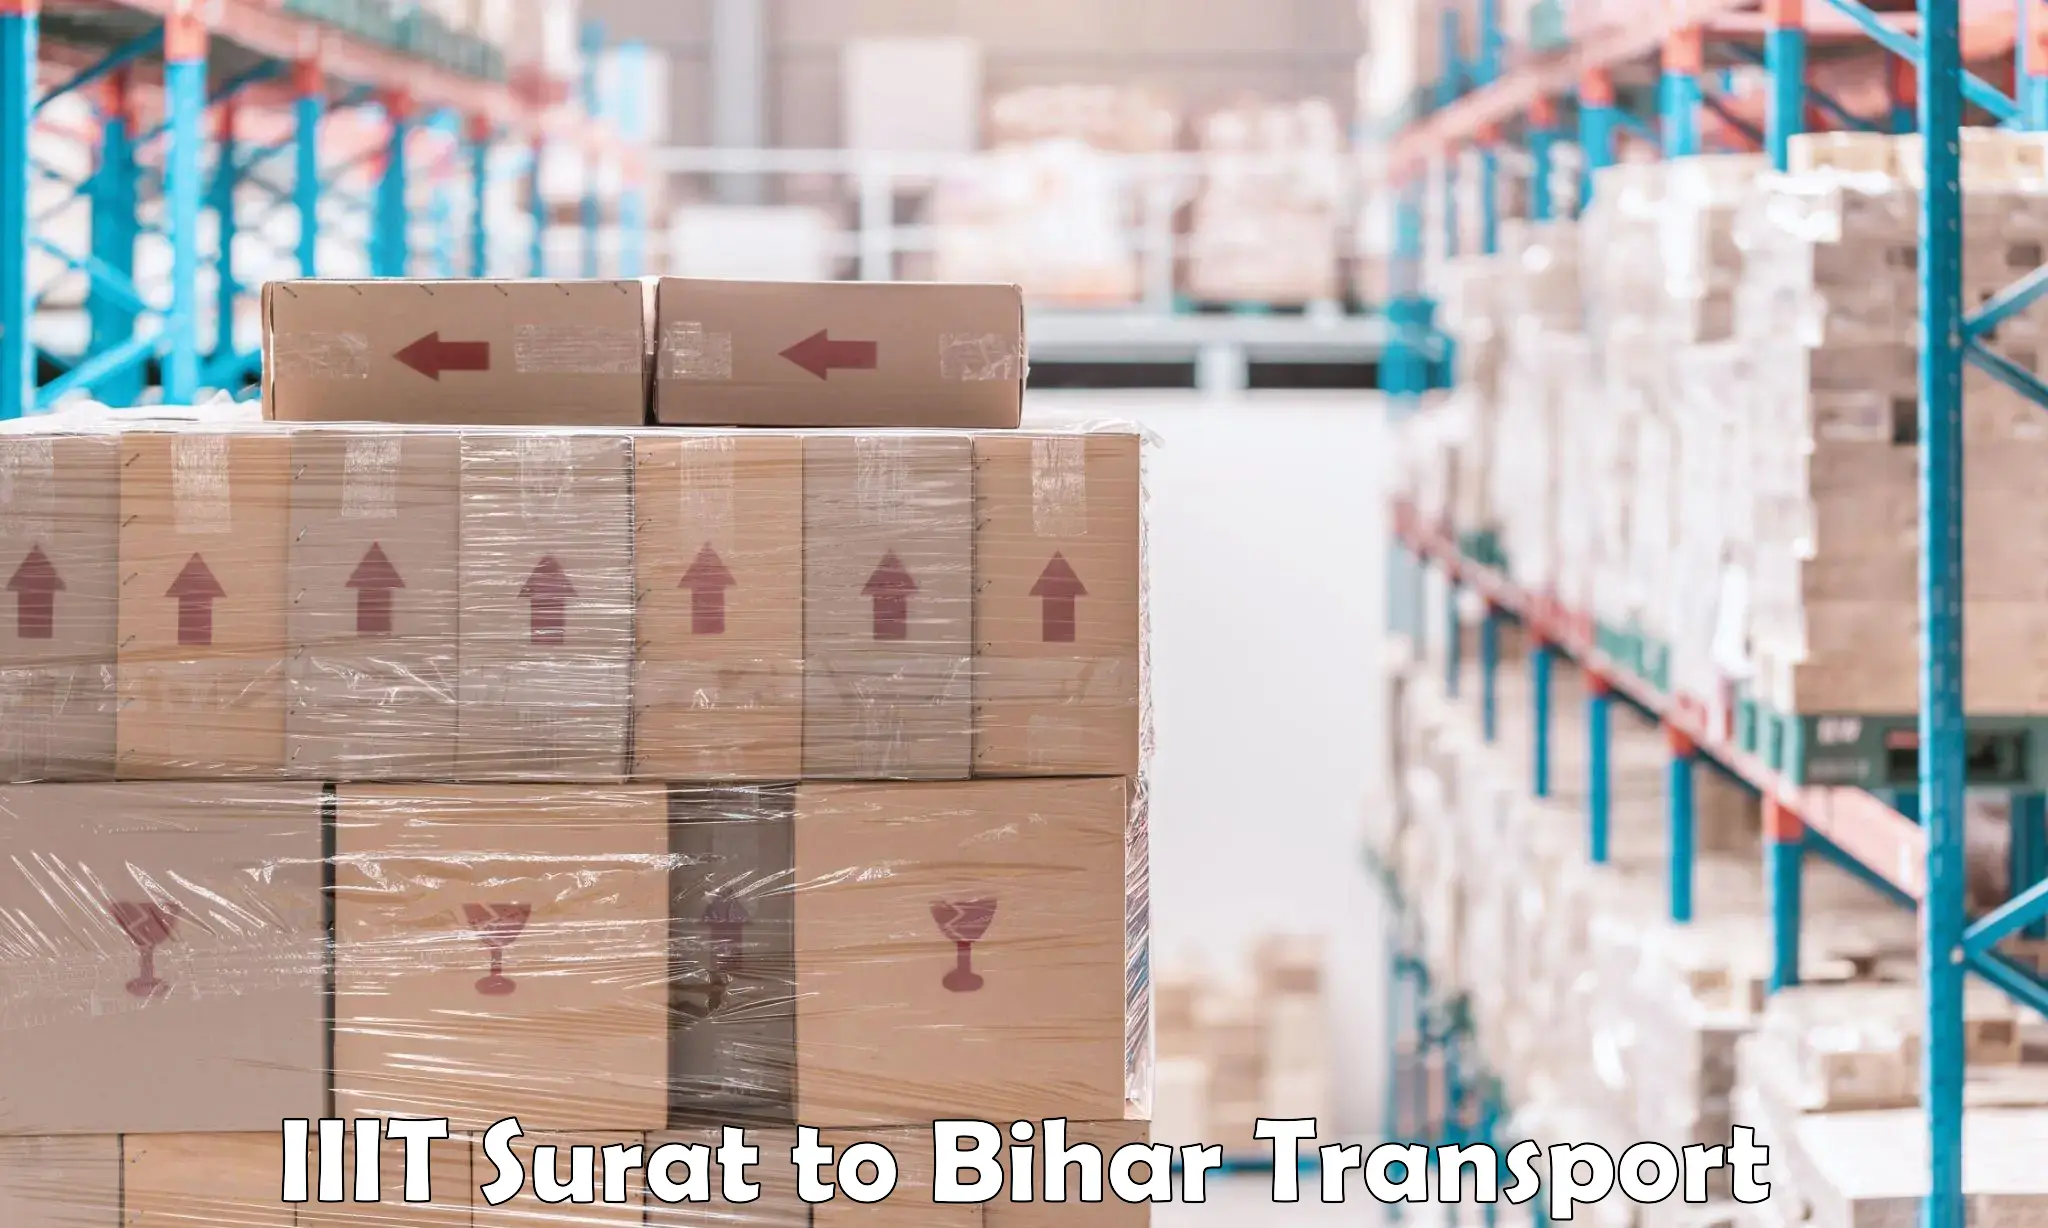 Commercial transport service IIIT Surat to Bihar Sharif